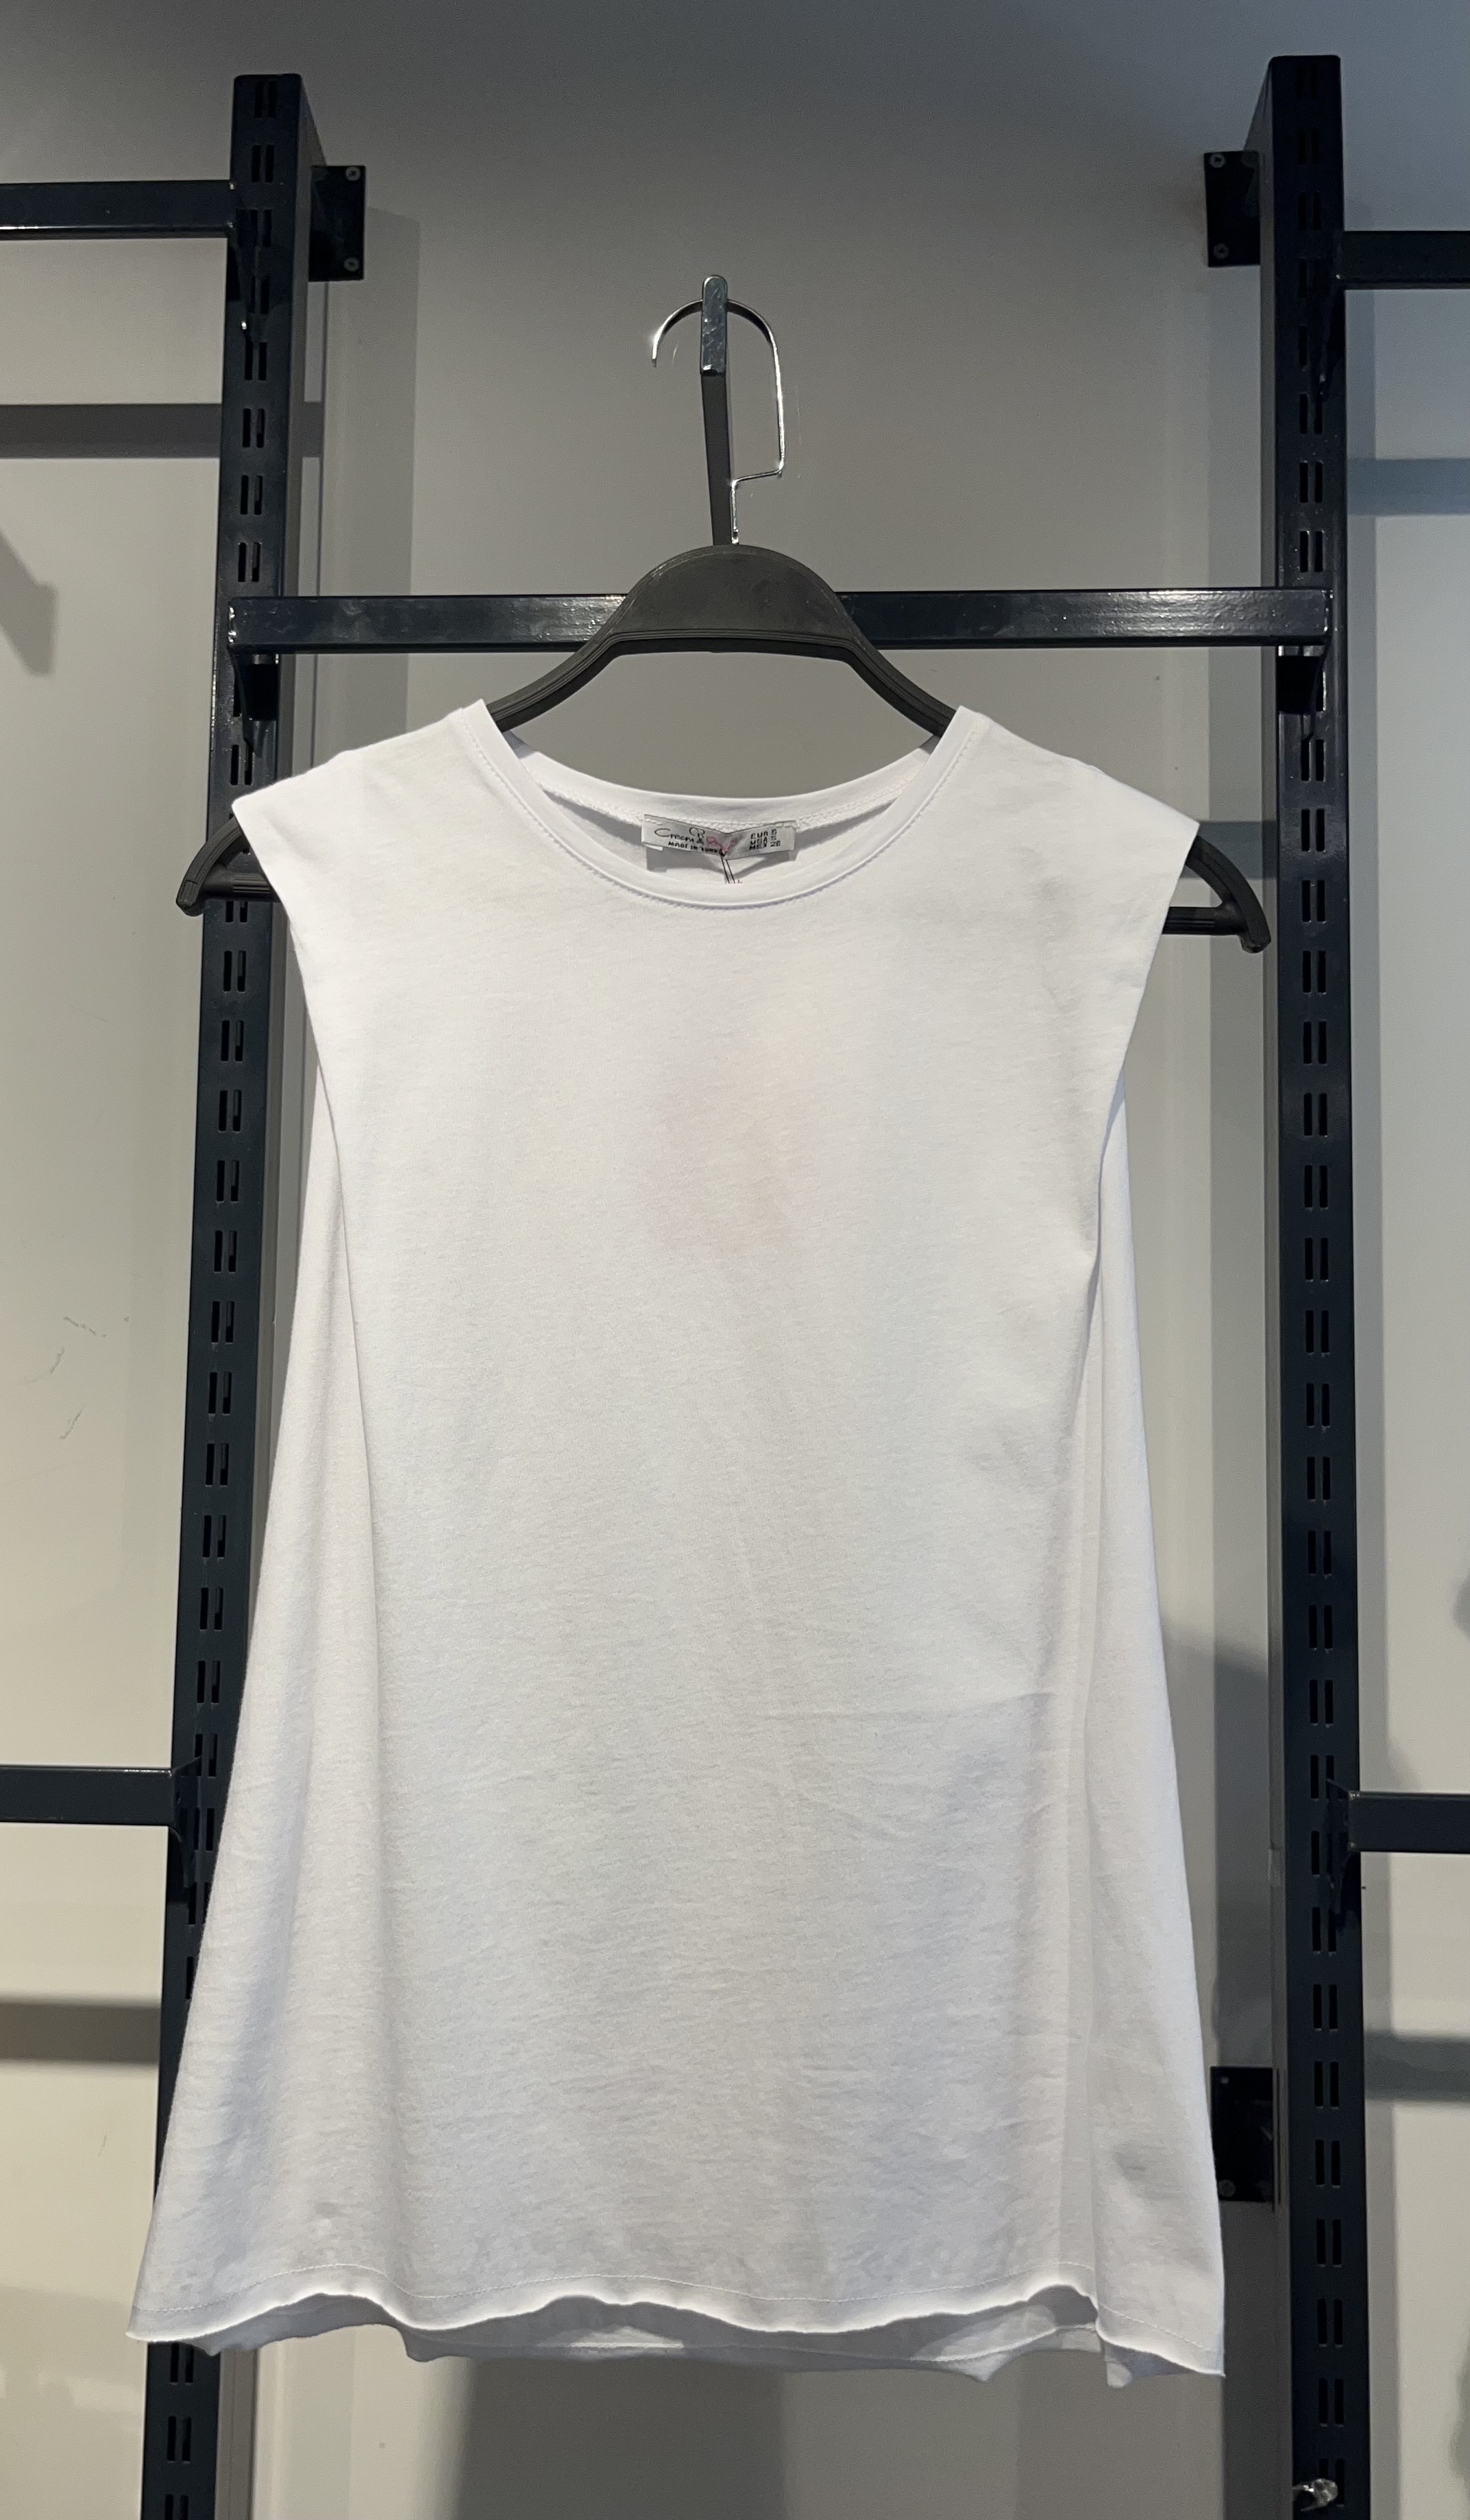 A wholesale clothing model wears CRO10853 - Basic Athlete - White, Turkish wholesale Undershirt of Cream Rouge